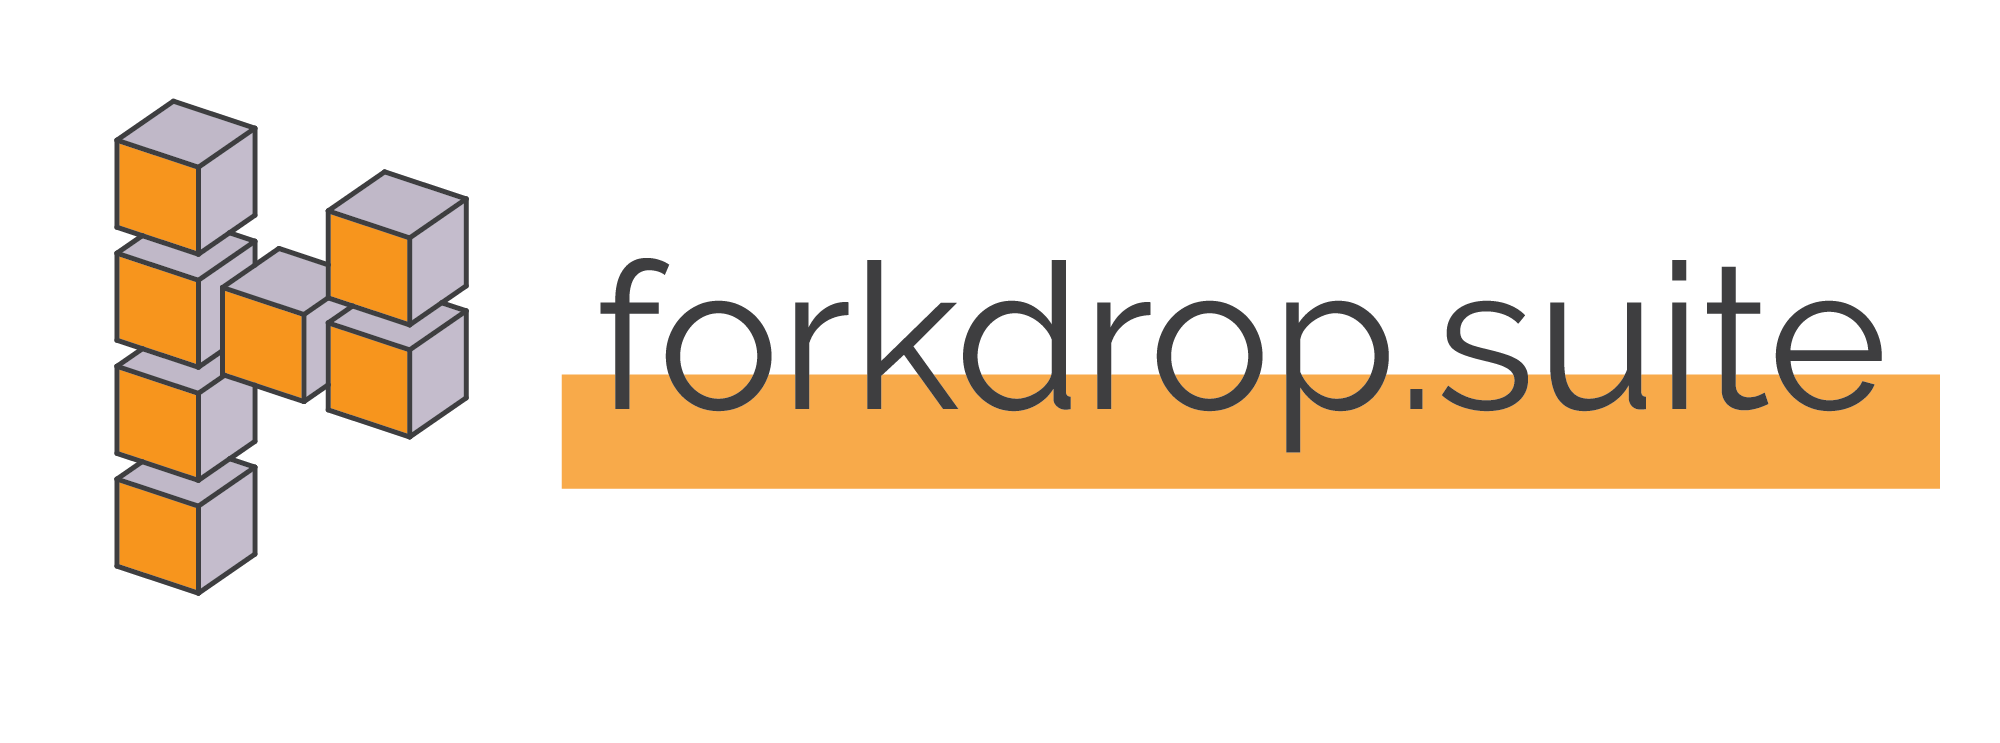 forkdrop-suite-logo-name-banner